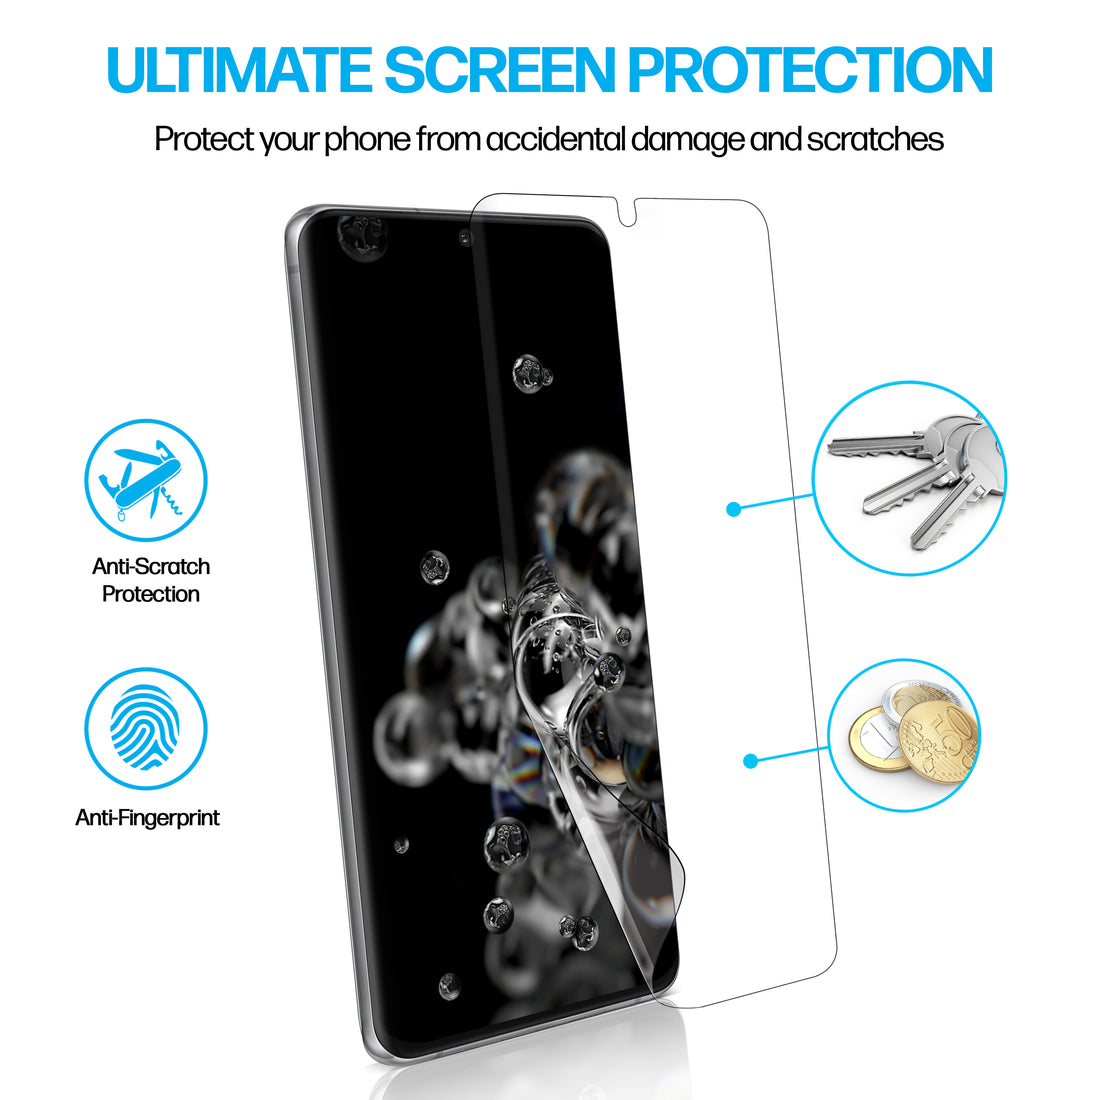 Samsung Galaxy S20 Ultra TPU Anti-Scratch Screen Protector Film [2